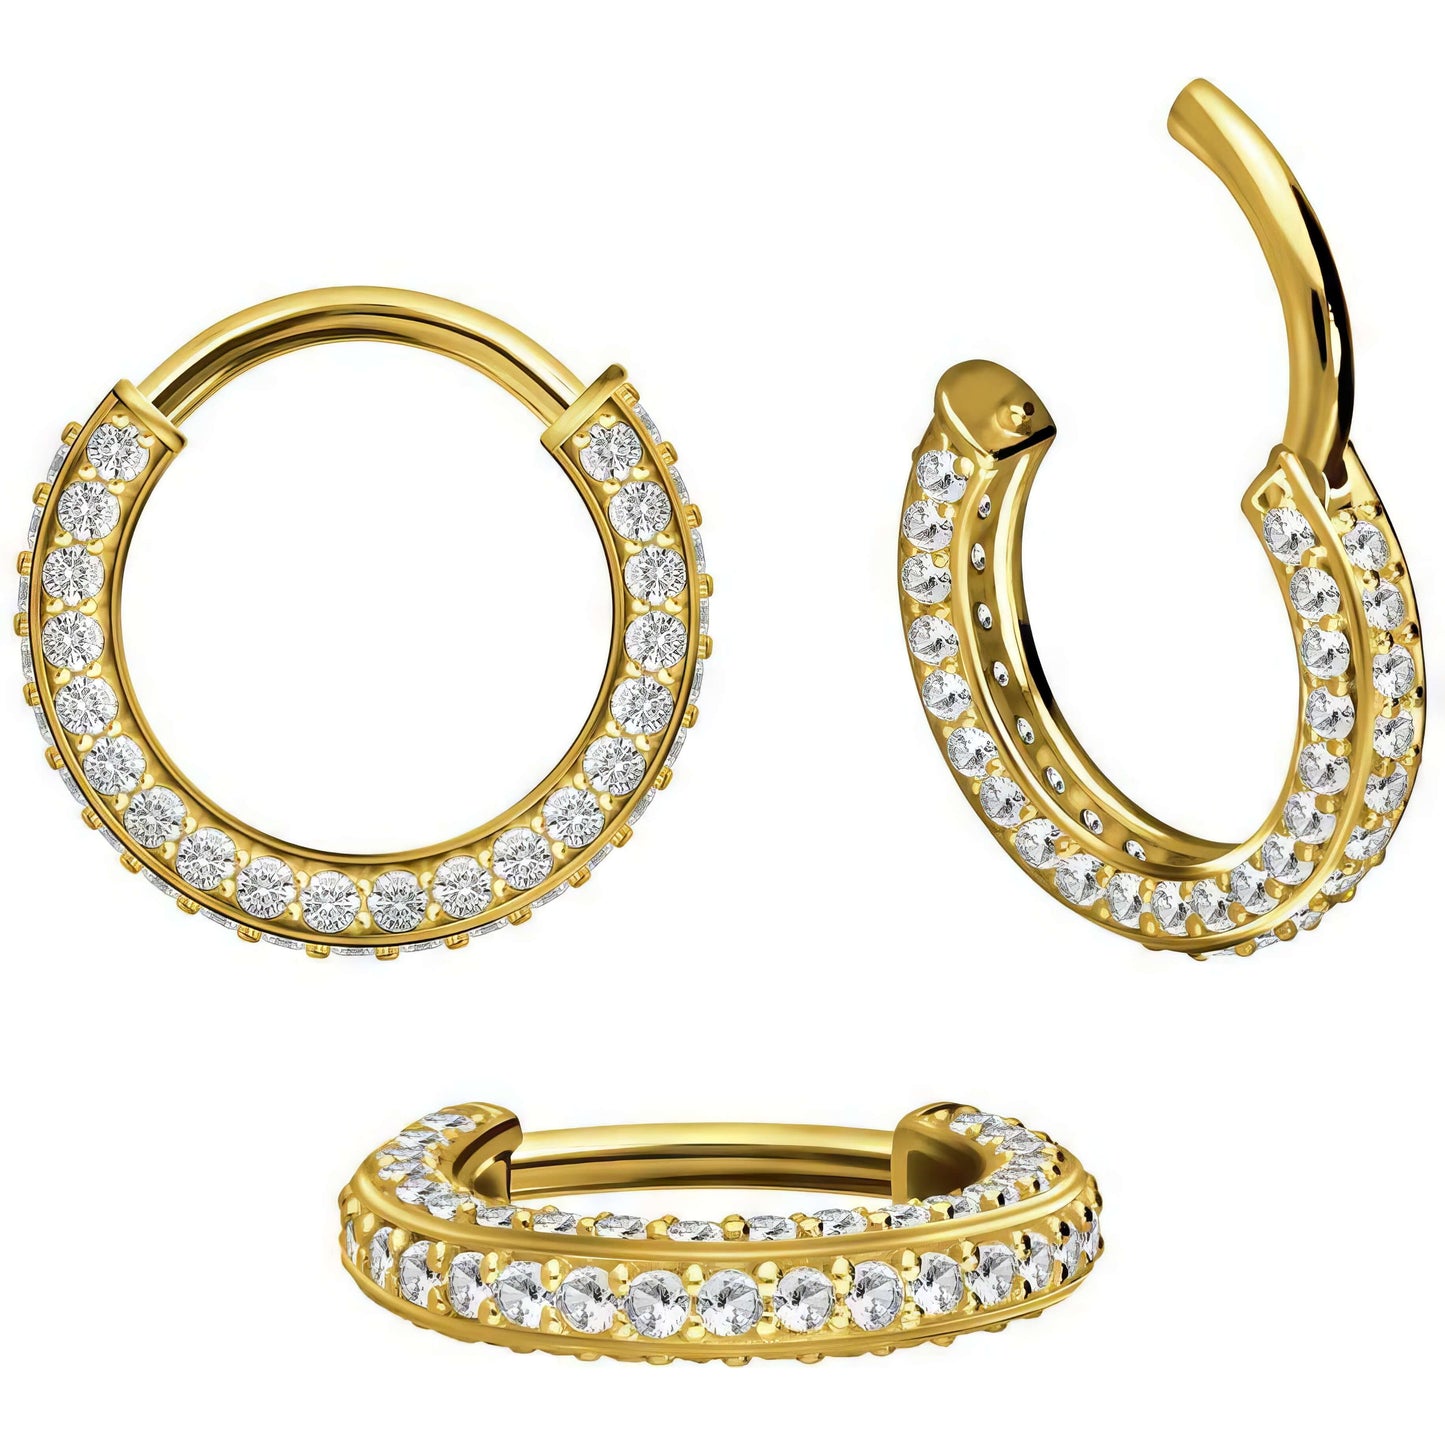 Solid Gold 18 Carat Ring Zirconia Clicker